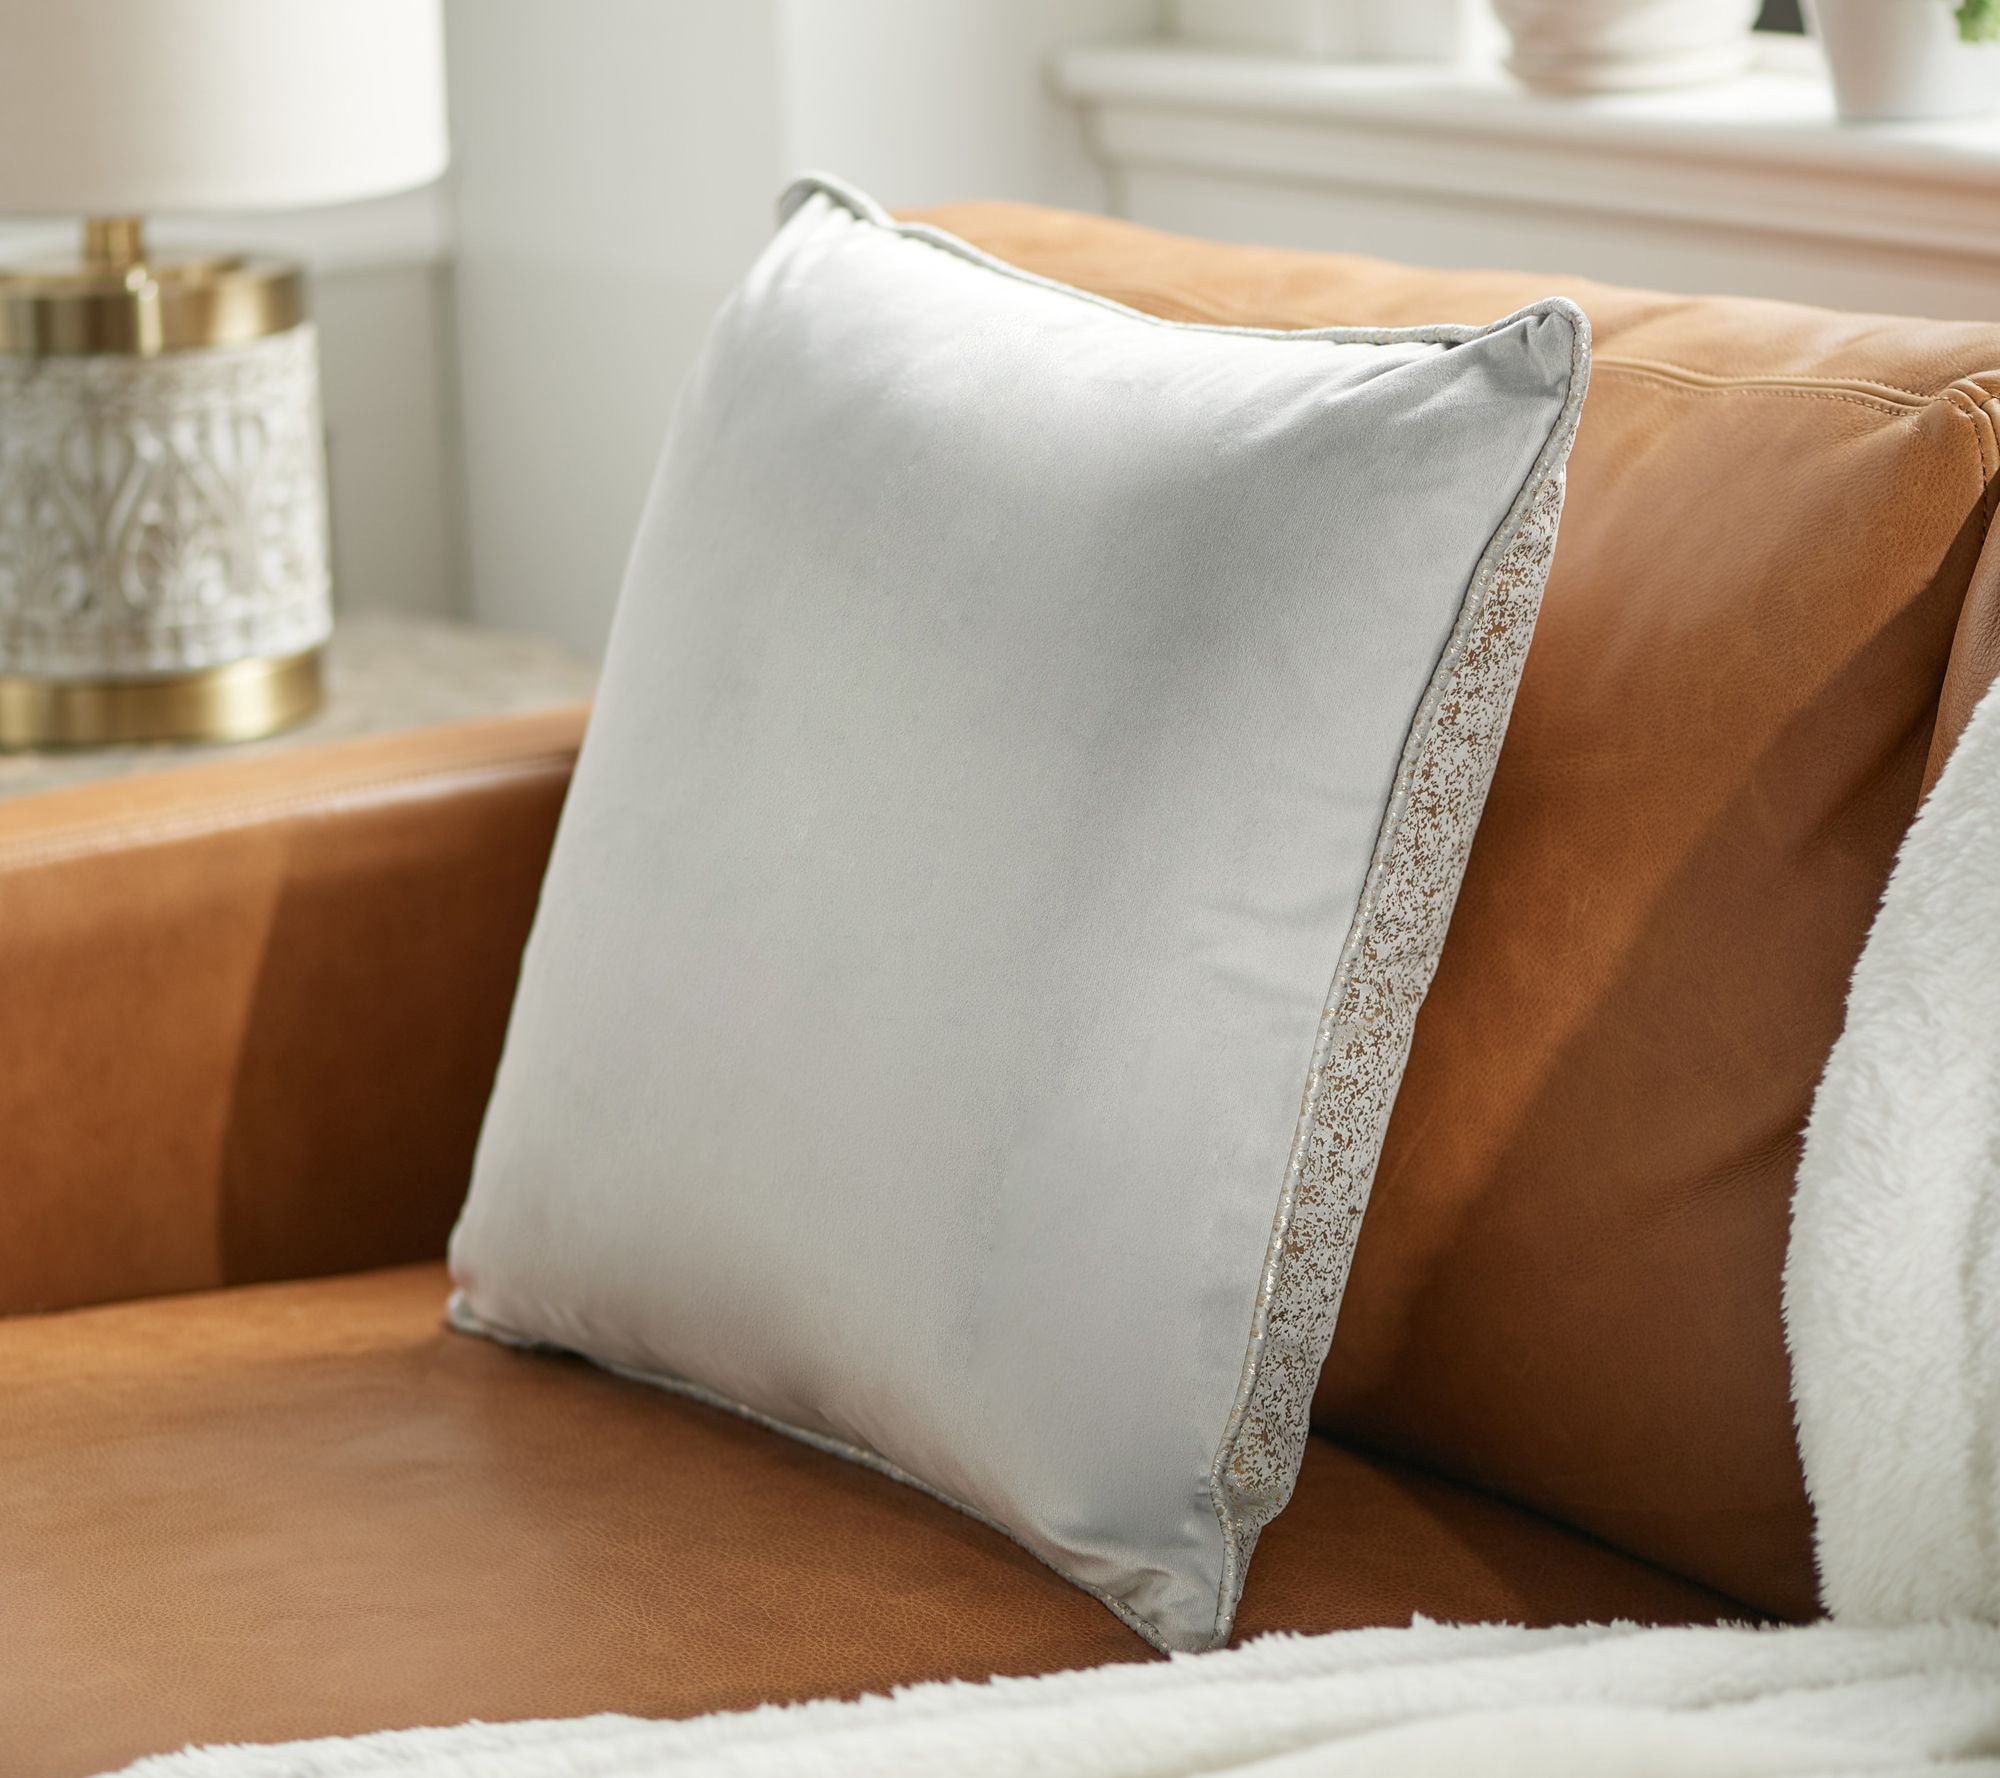 Luxe Rachel Zoe  Home Décor, Decorative Pillows & More 